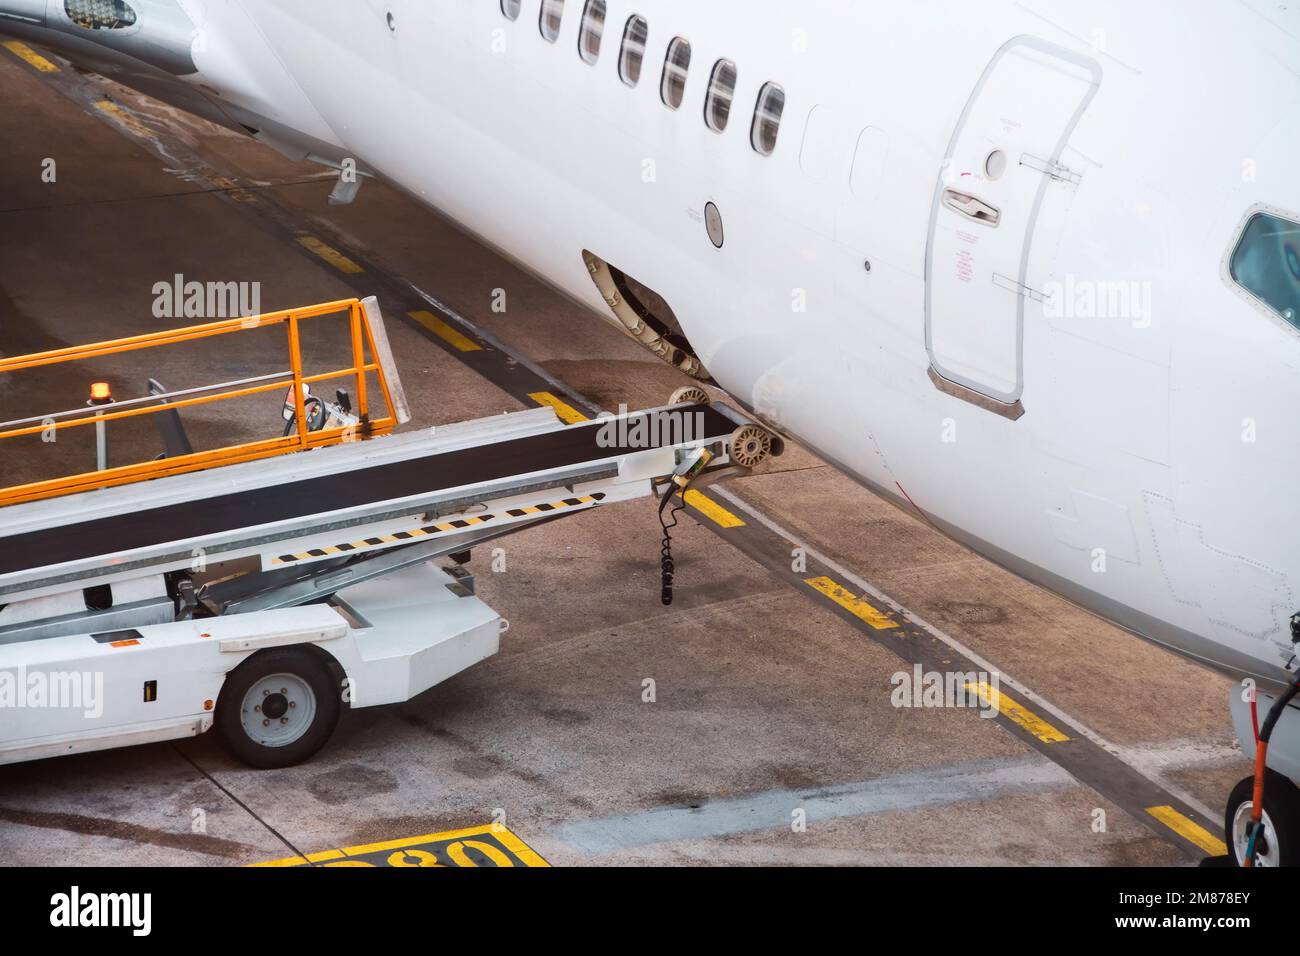 Abra el maletero con equipo de cinta para descargar y cargar el equipaje en un avión de pasajeros Foto de stock